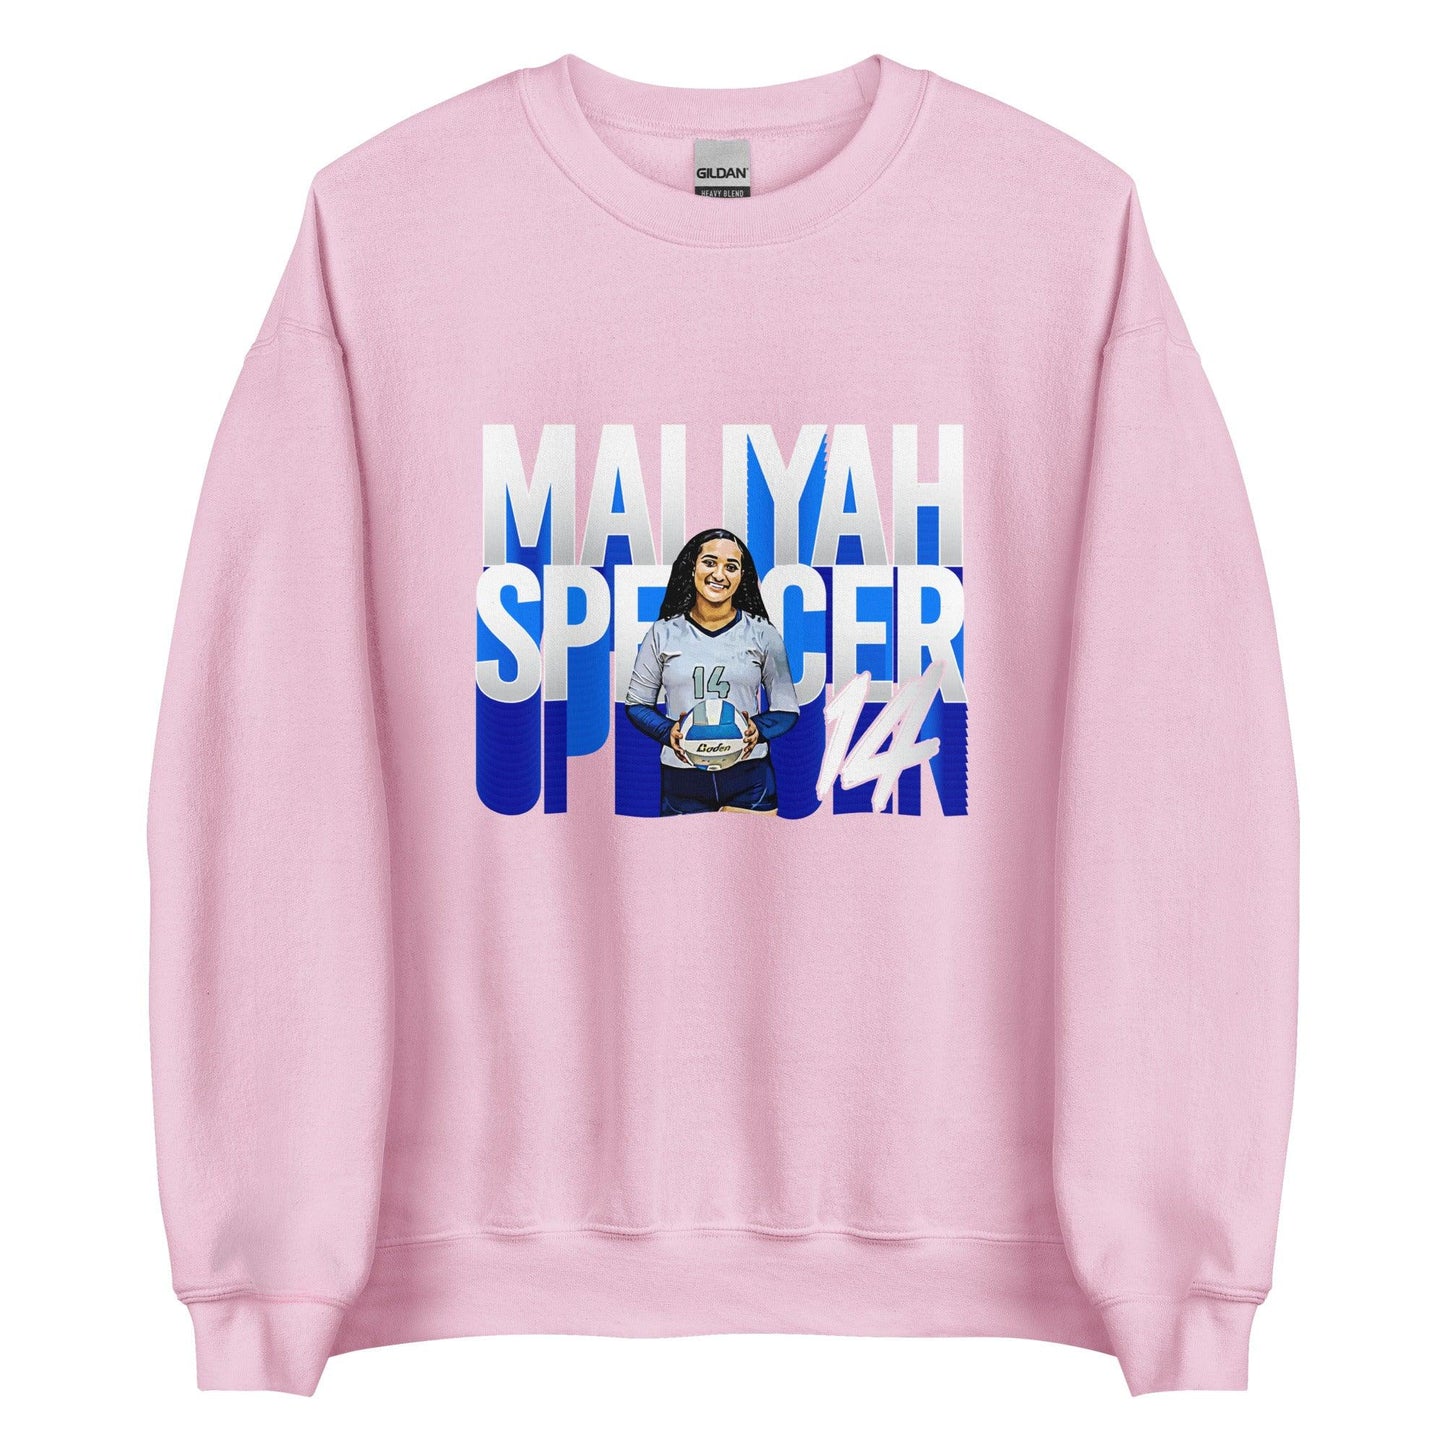 Maliyah Spencer "Gameday" Sweatshirt - Fan Arch